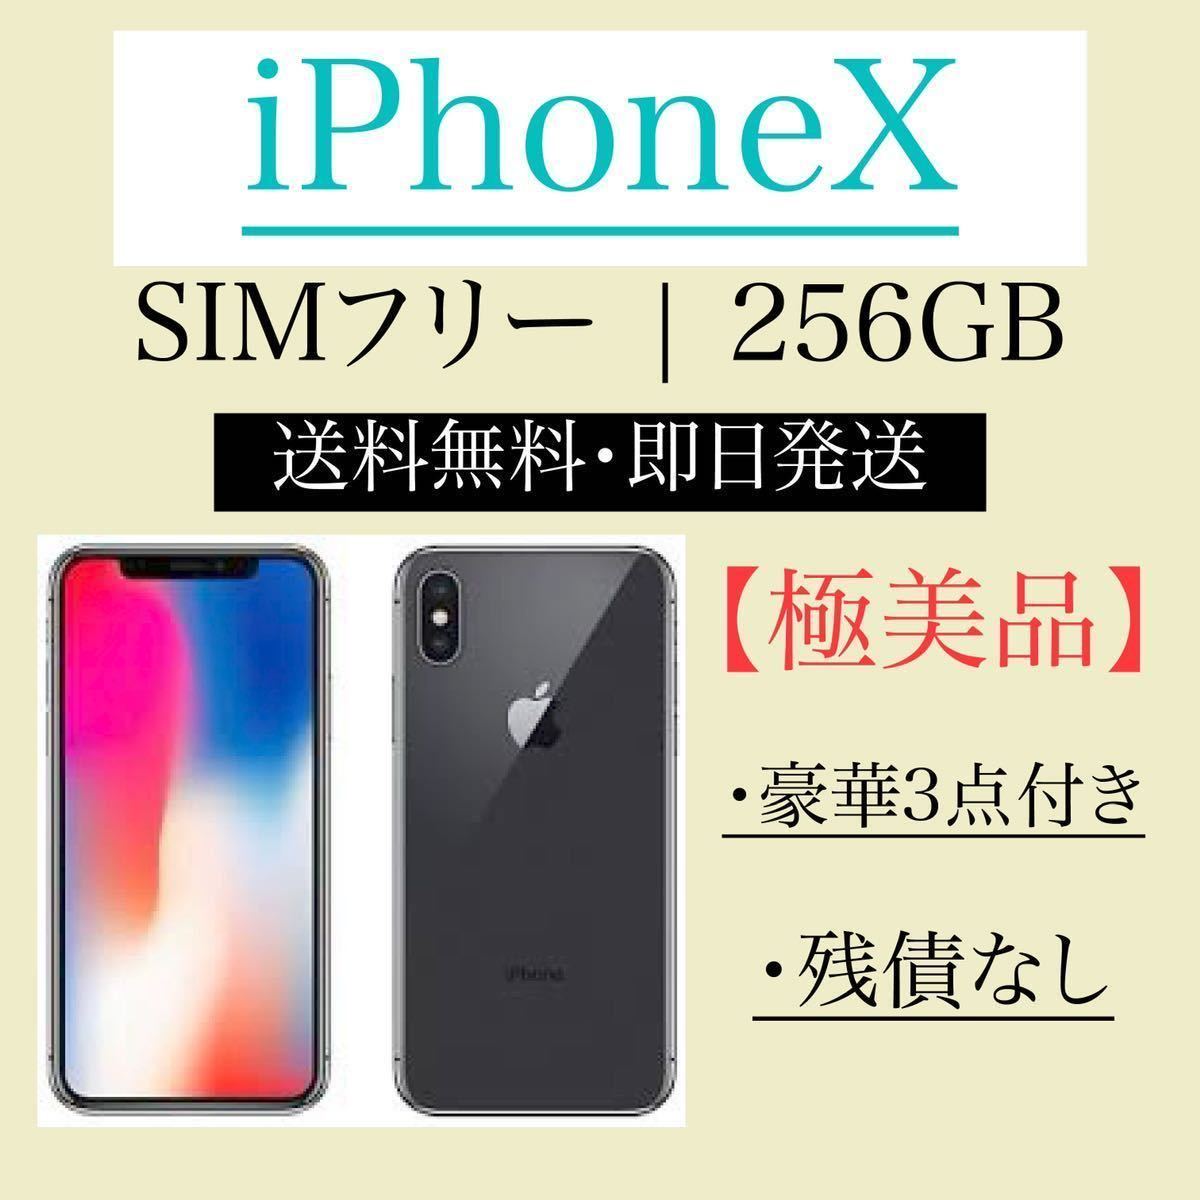 22265円 【メーカー直送】 iPhone X Space Gray 256 GB SIMフリー